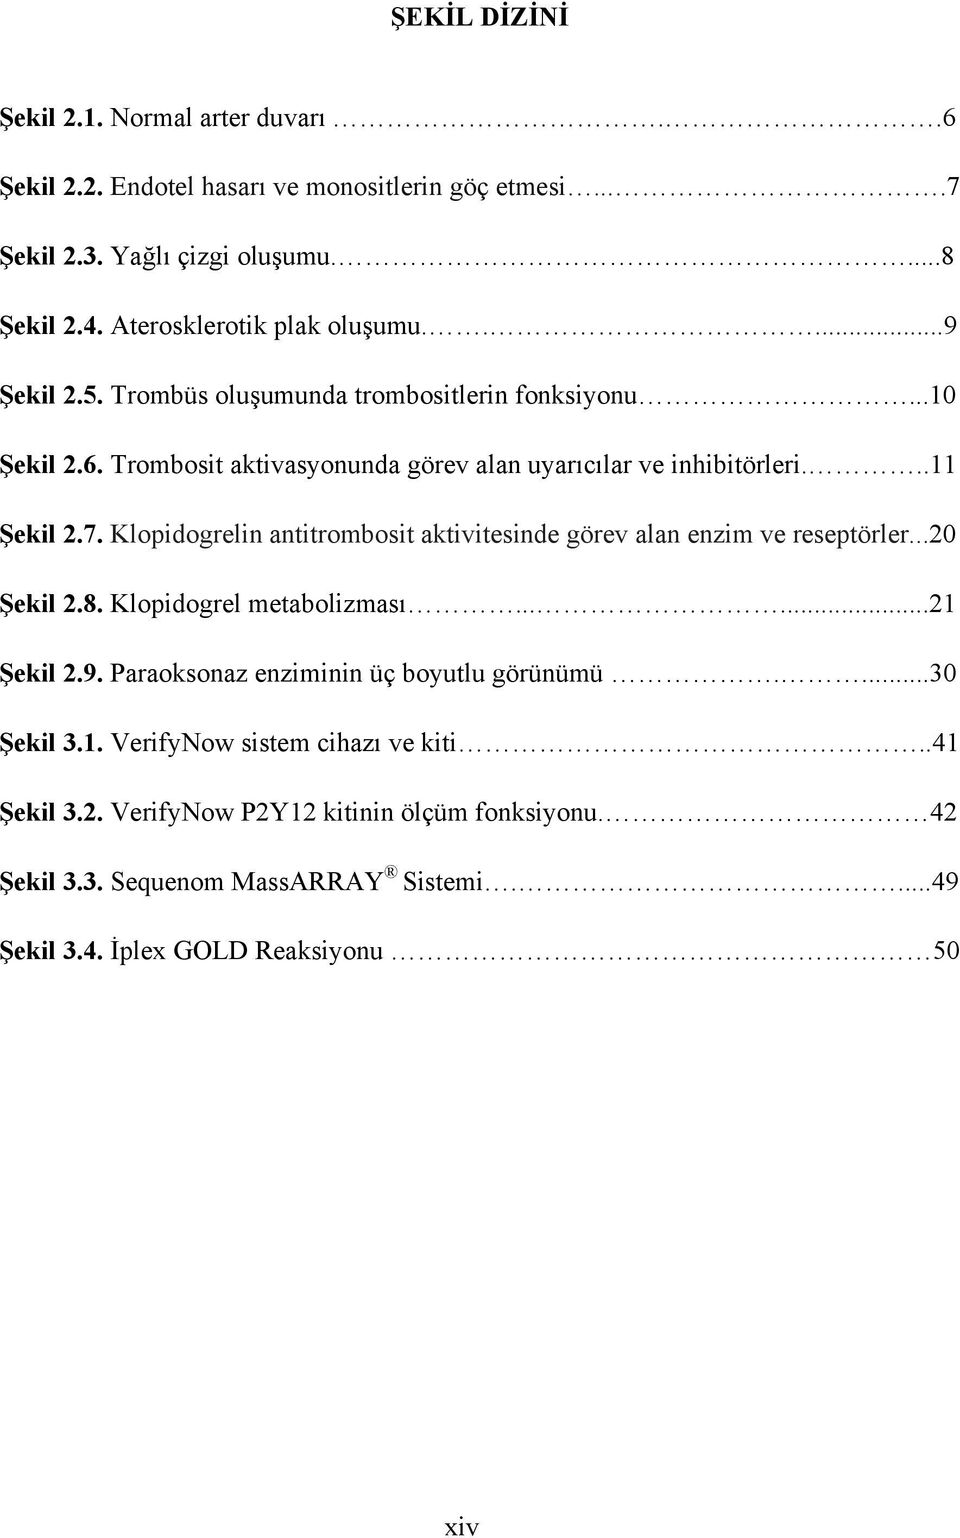 ..11 Şekil 2.7. Klopidogrelin antitrombosit aktivitesinde görev alan enzim ve reseptörler...20 Şekil 2.8. Klopidogrel metabolizması......21 Şekil 2.9.